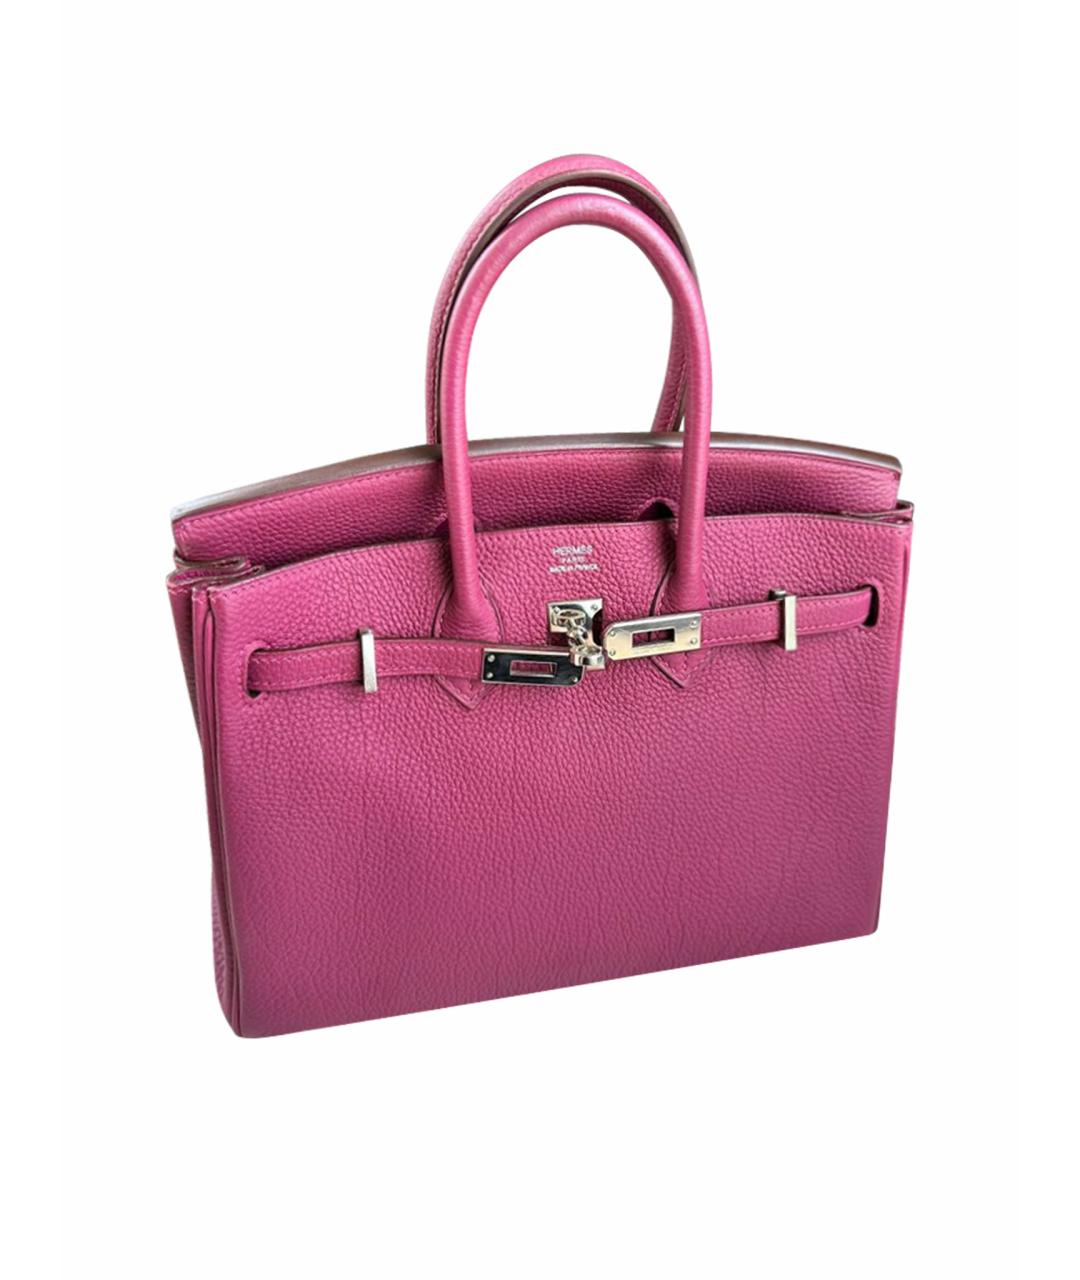 HERMES Розовая кожаная сумка с короткими ручками, фото 1